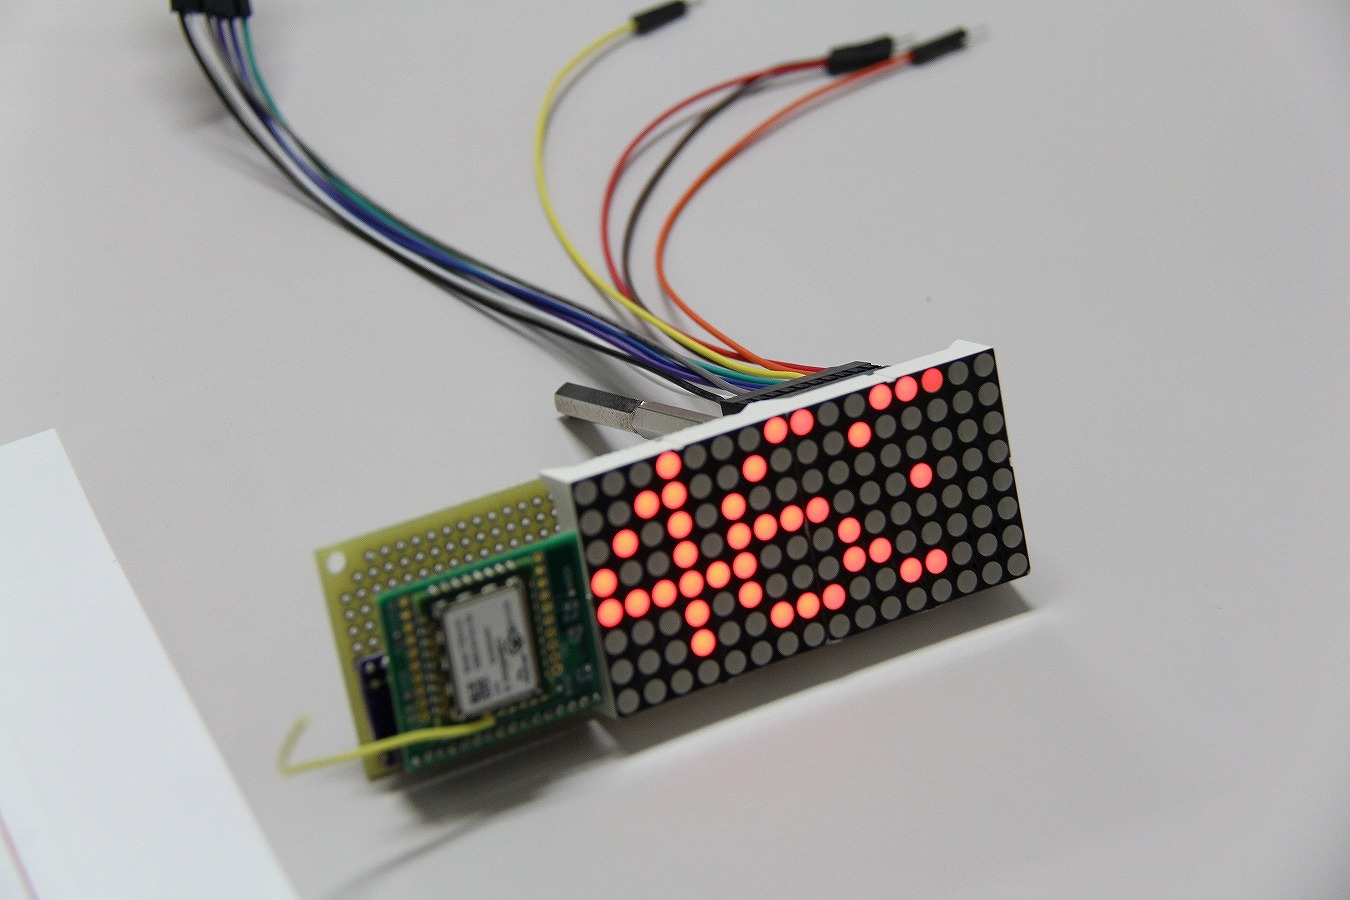 ローム電子工作コミュニティ による Maker Faire出展奮闘記 電池レス投票システム開発と初めての３dプリンターにチャレンジ Device Plus デバプラ